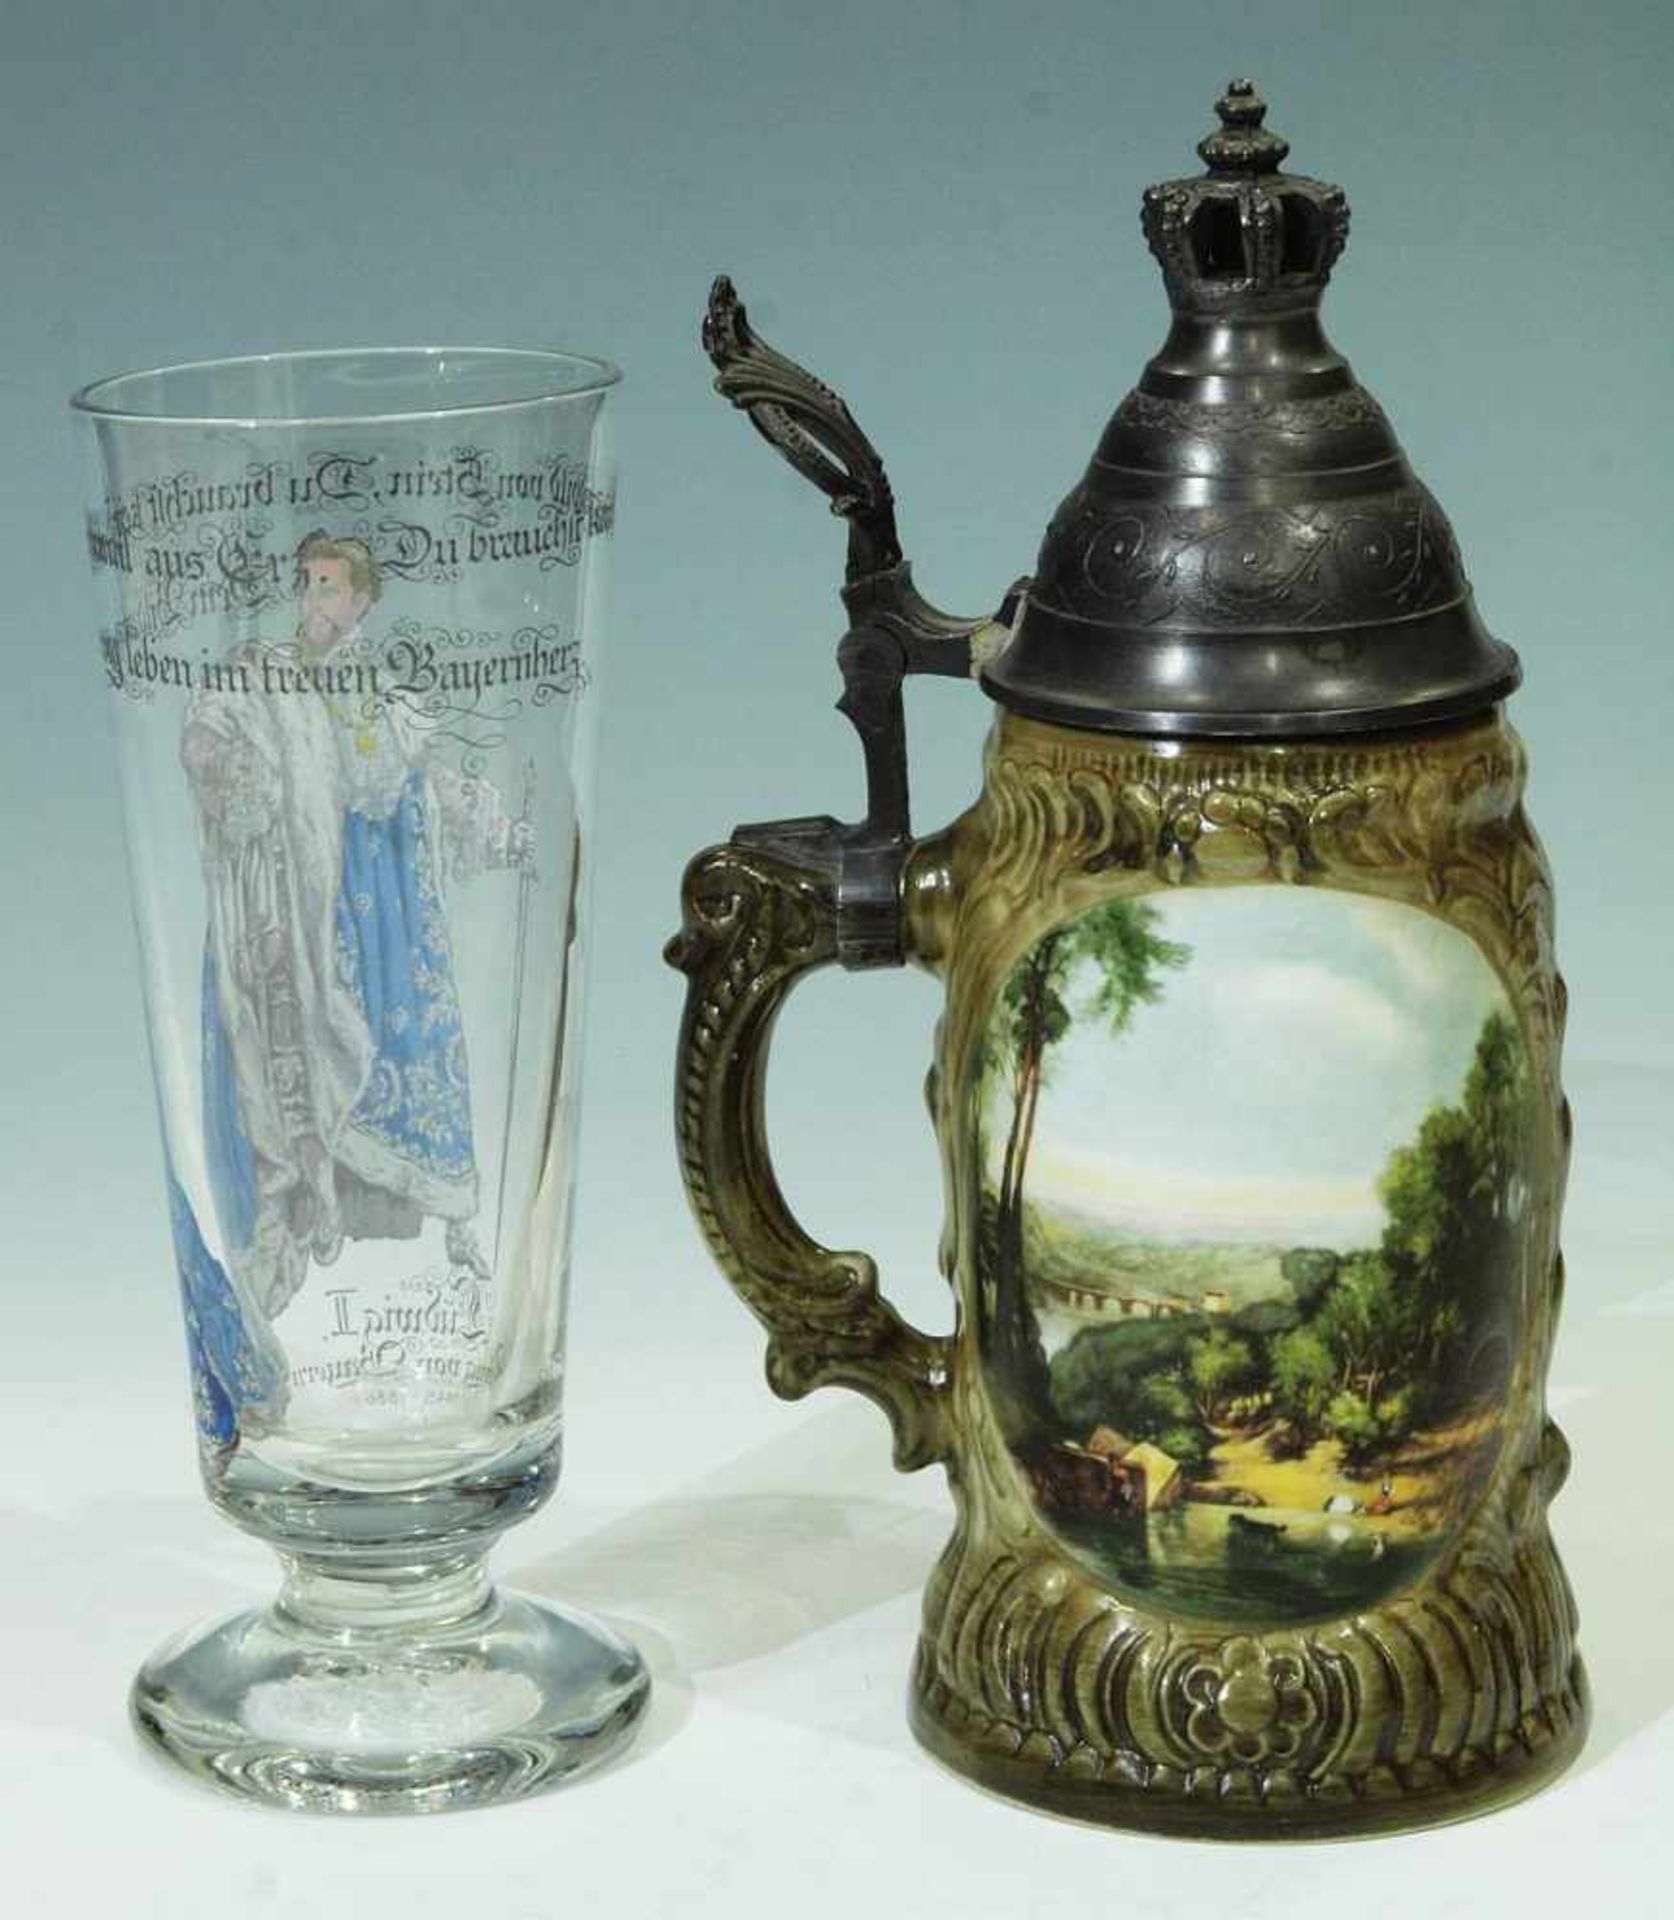 Pokalglas. Deckelkrug. Pokalglas, farbloses dickwandiges Glas mit farbigem Standbildnis Ludwig II. - Image 3 of 6